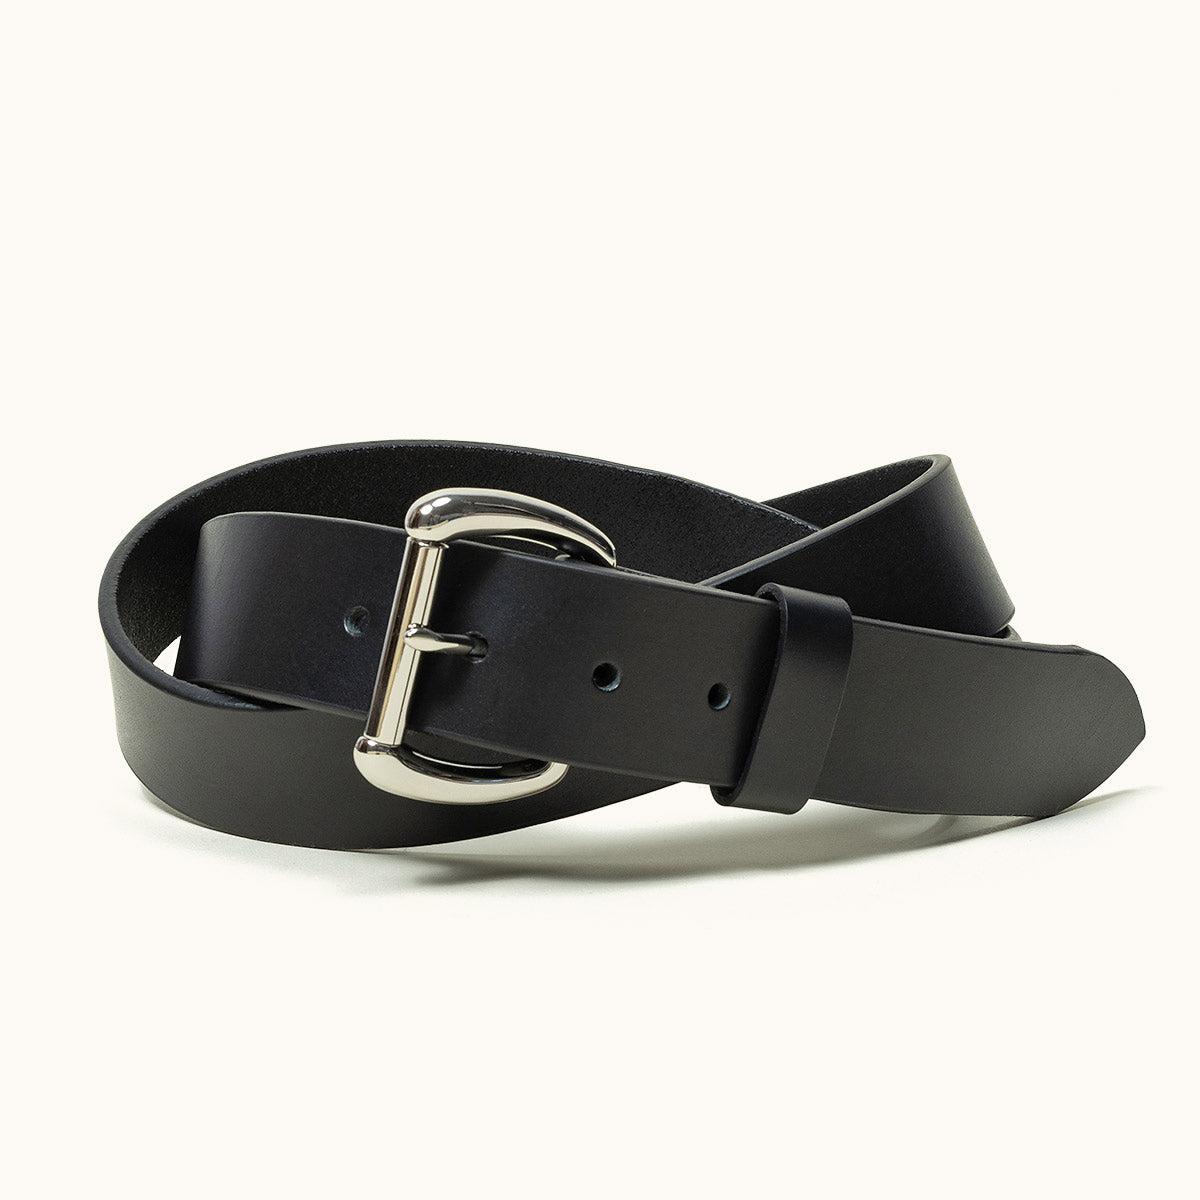 Portland Leather Basic Belt Bag, Black